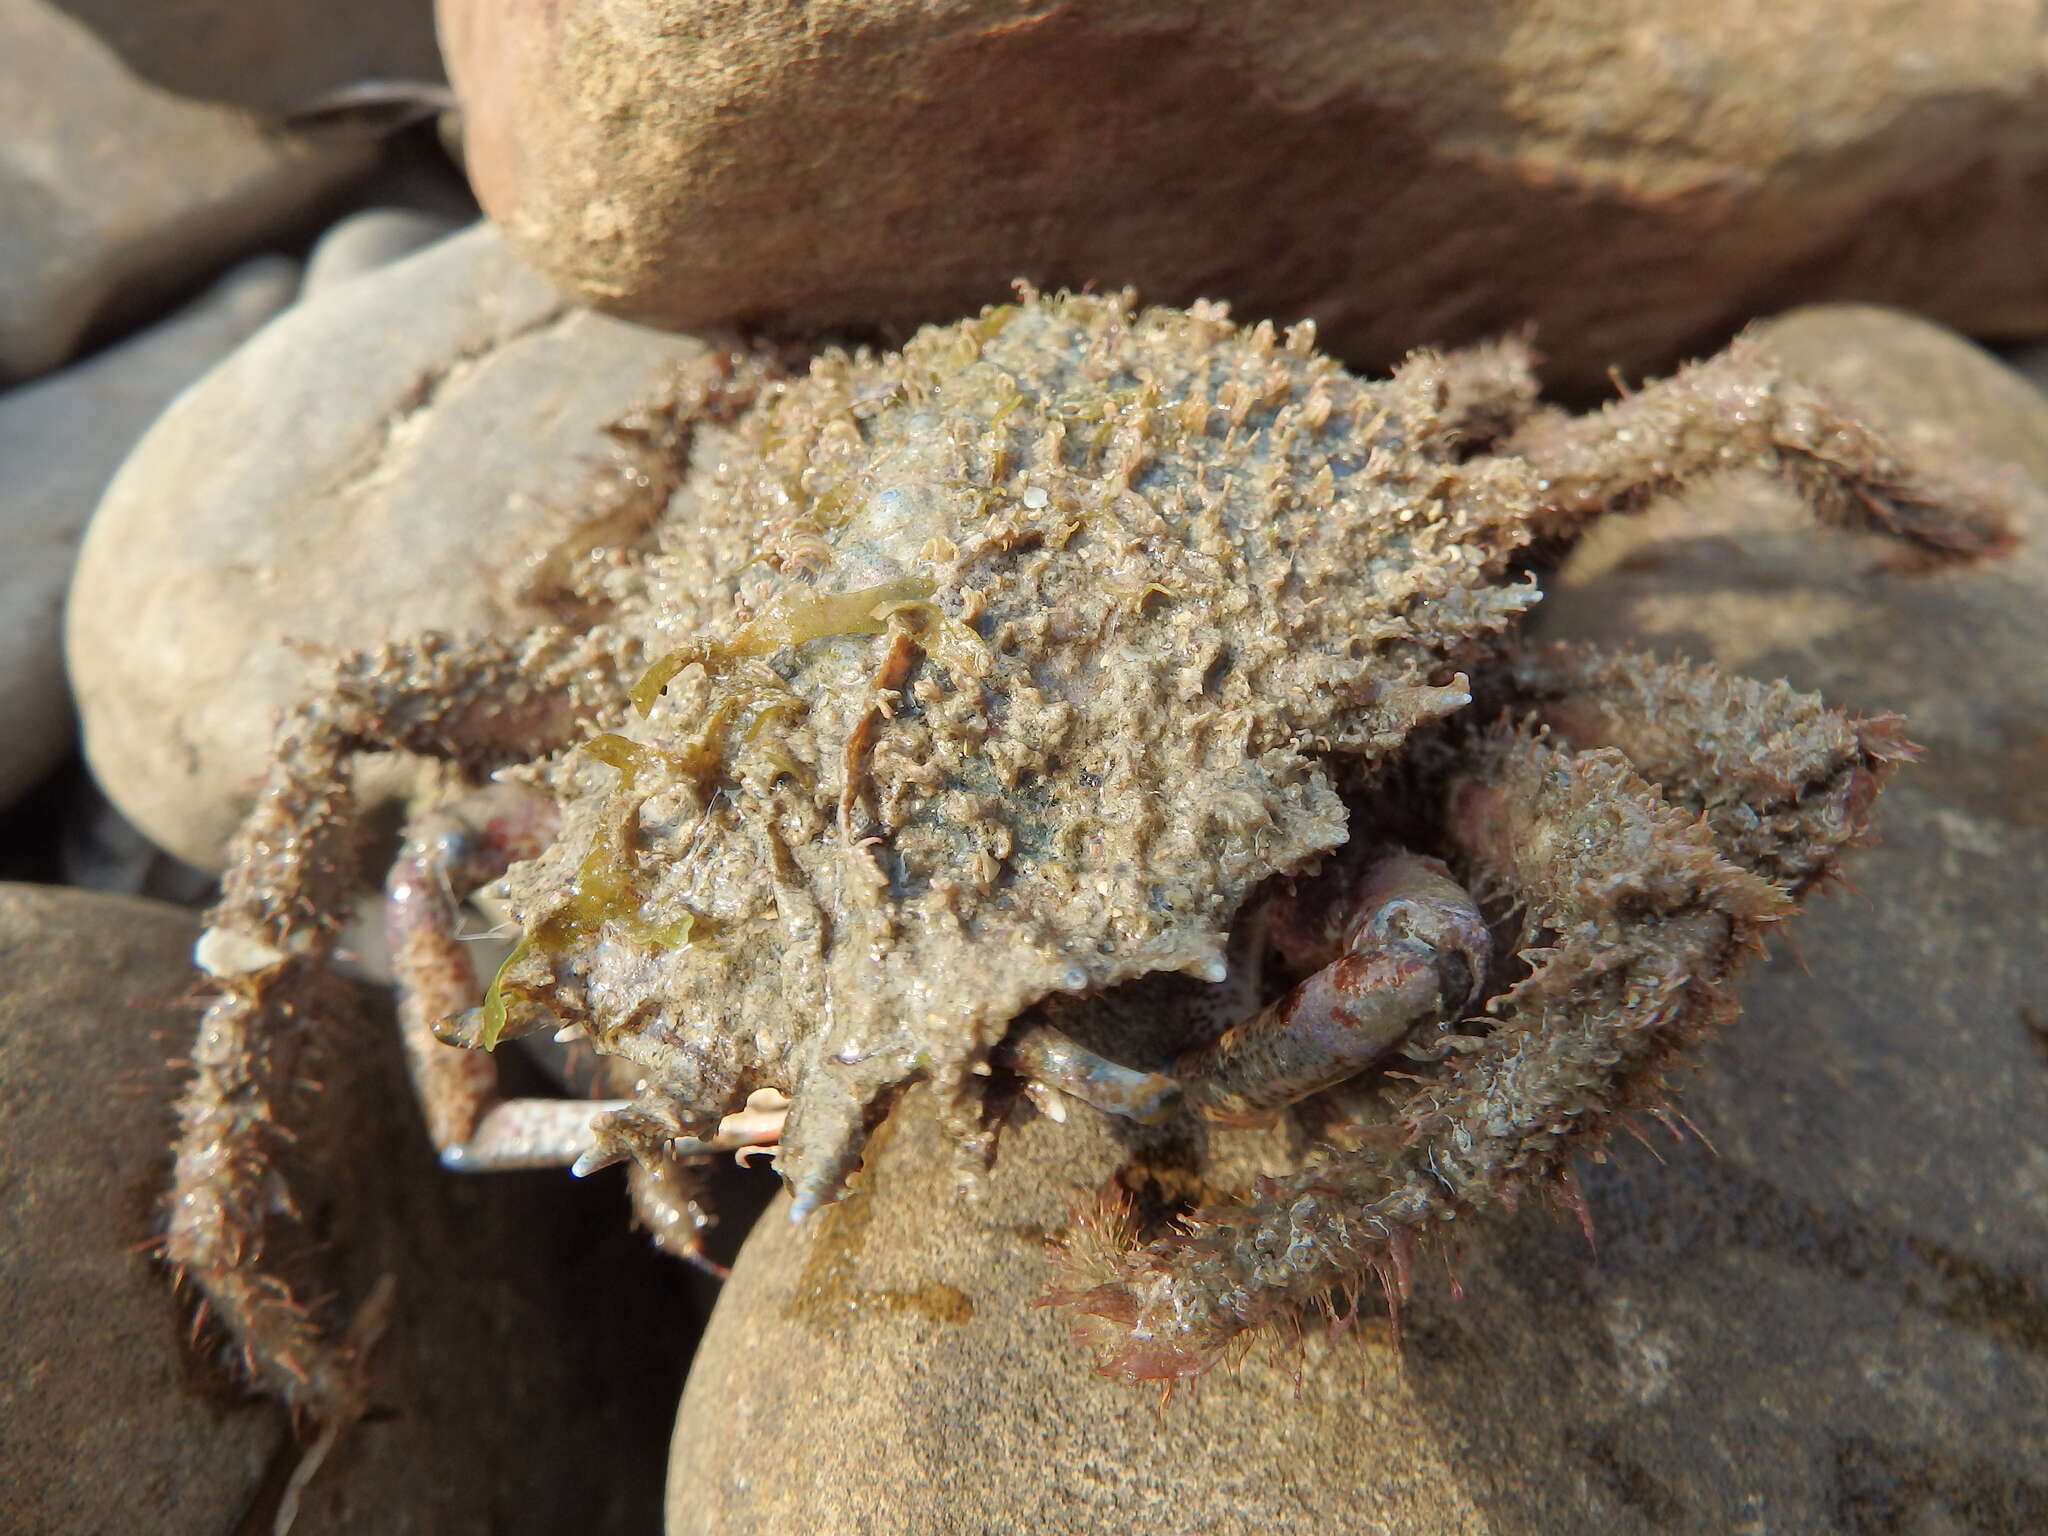 Image of lesser spider crab